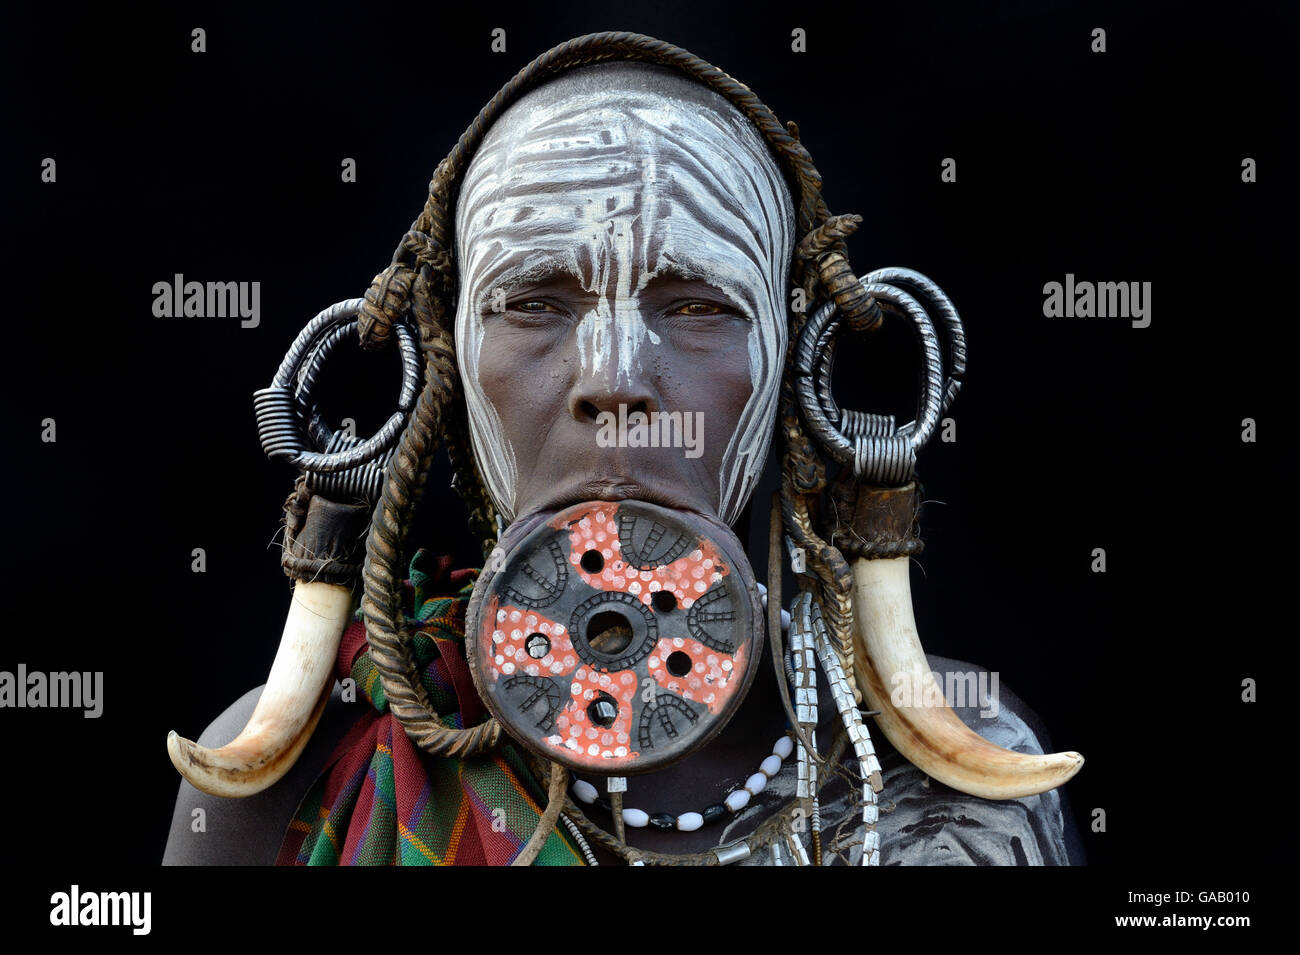 Ritratto di una donna dalla tribù dei Mursi, tradizionalmente decorate e dipinte, indossando un grande labbro di argilla piastra, Valle dell'Omo, Etiopia, marzo 2015. Foto Stock